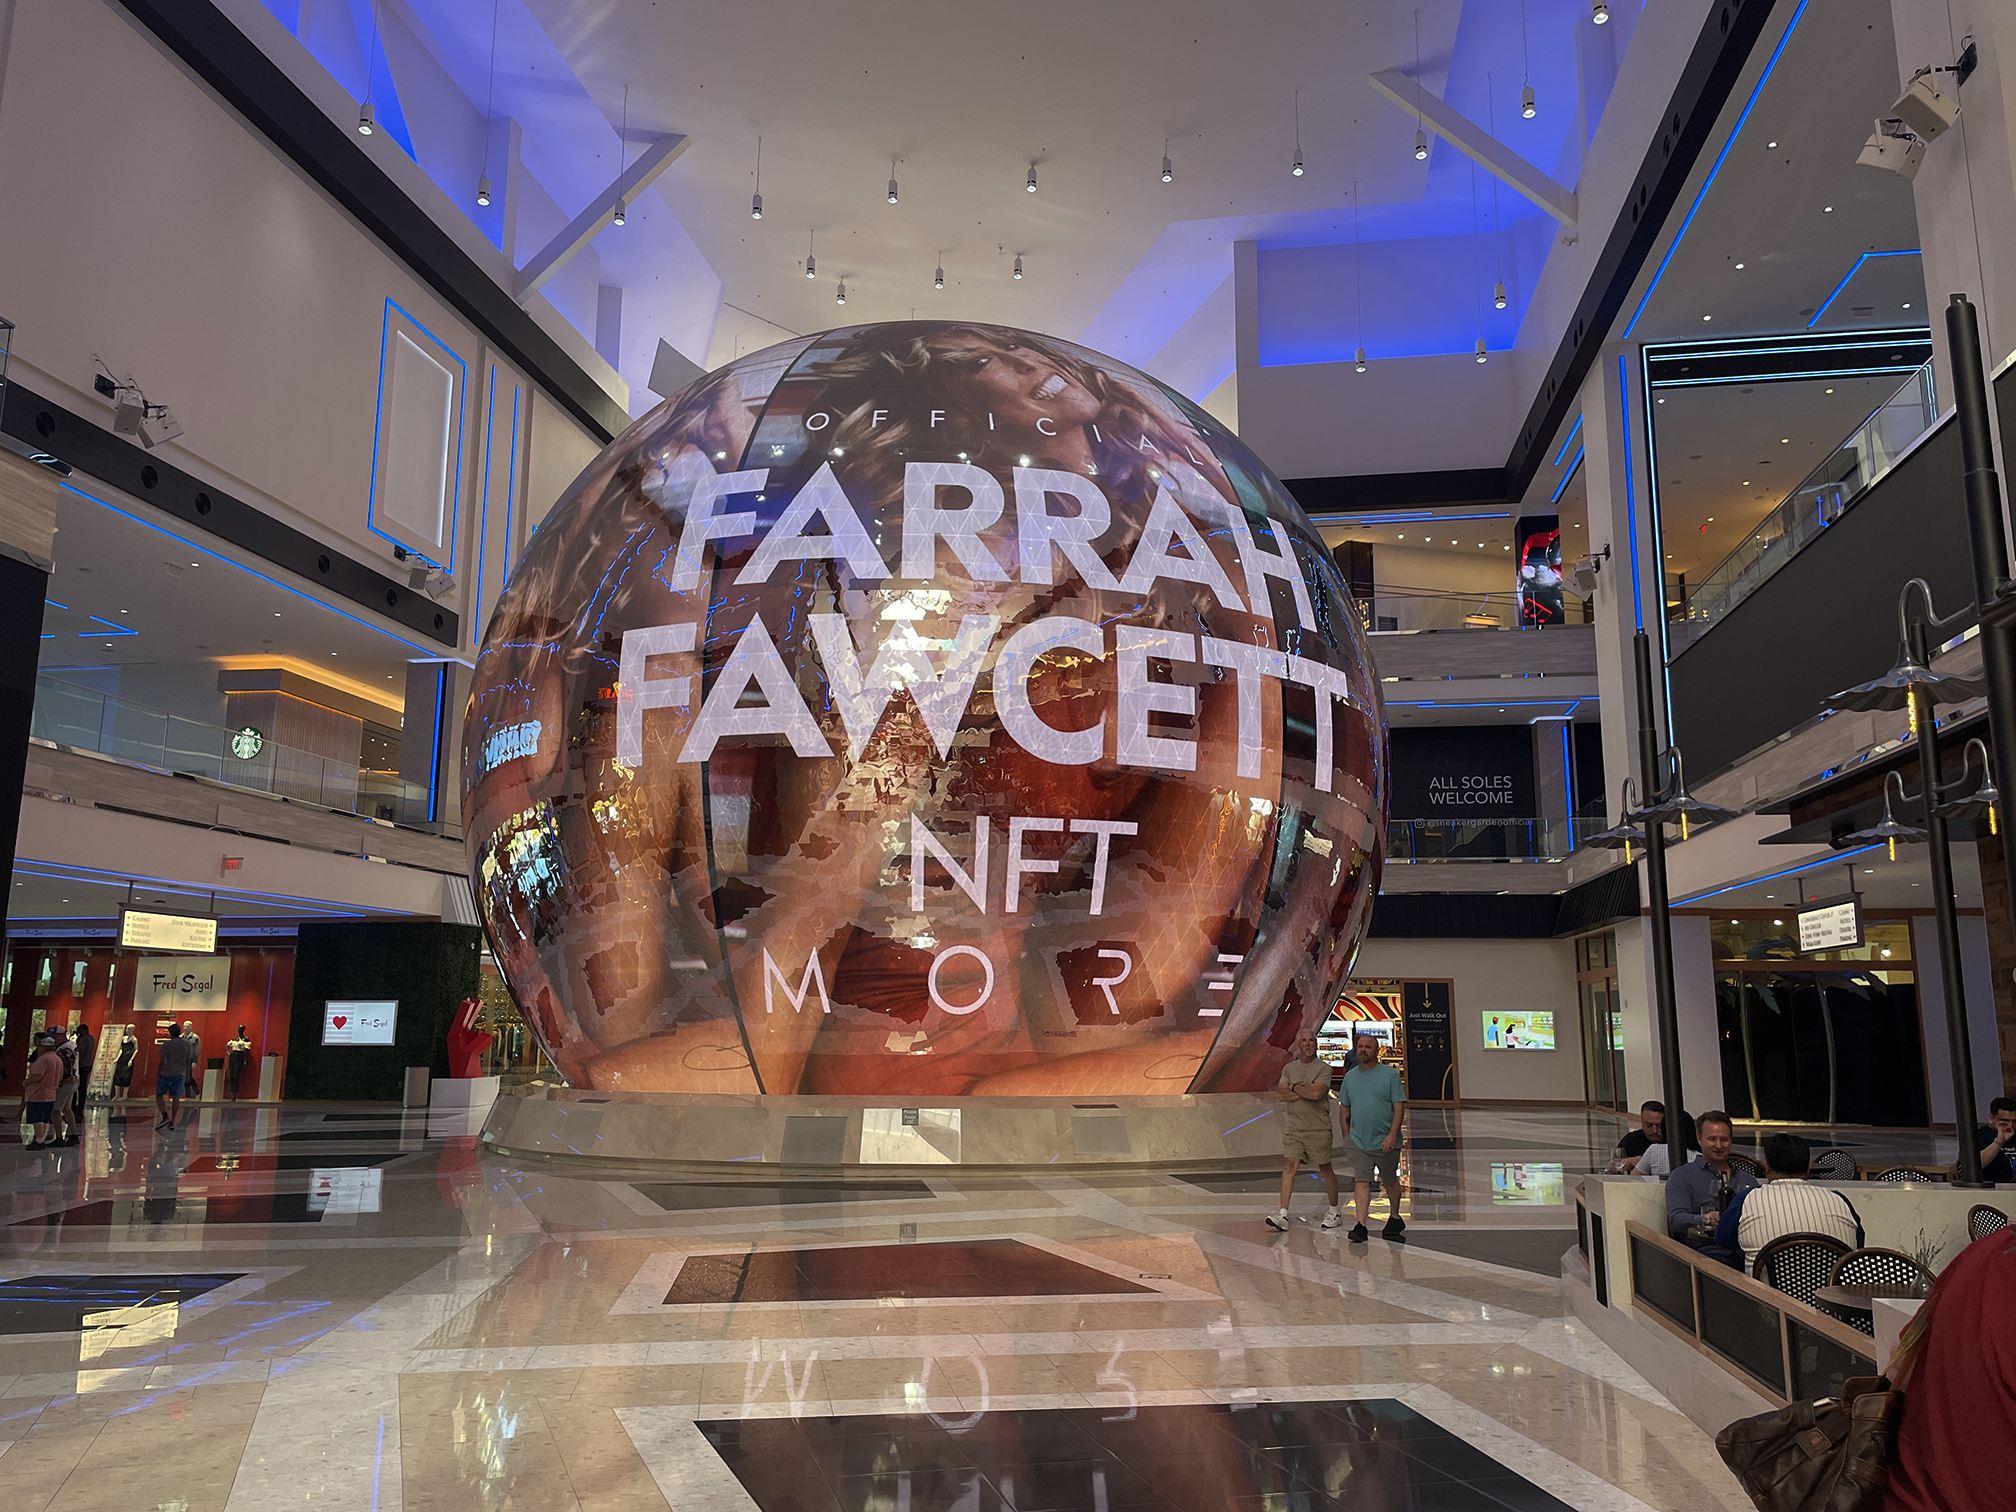 ResortsWorld Pioneers “Fountain of Youth” NFT Farrah Fawcett Premiere